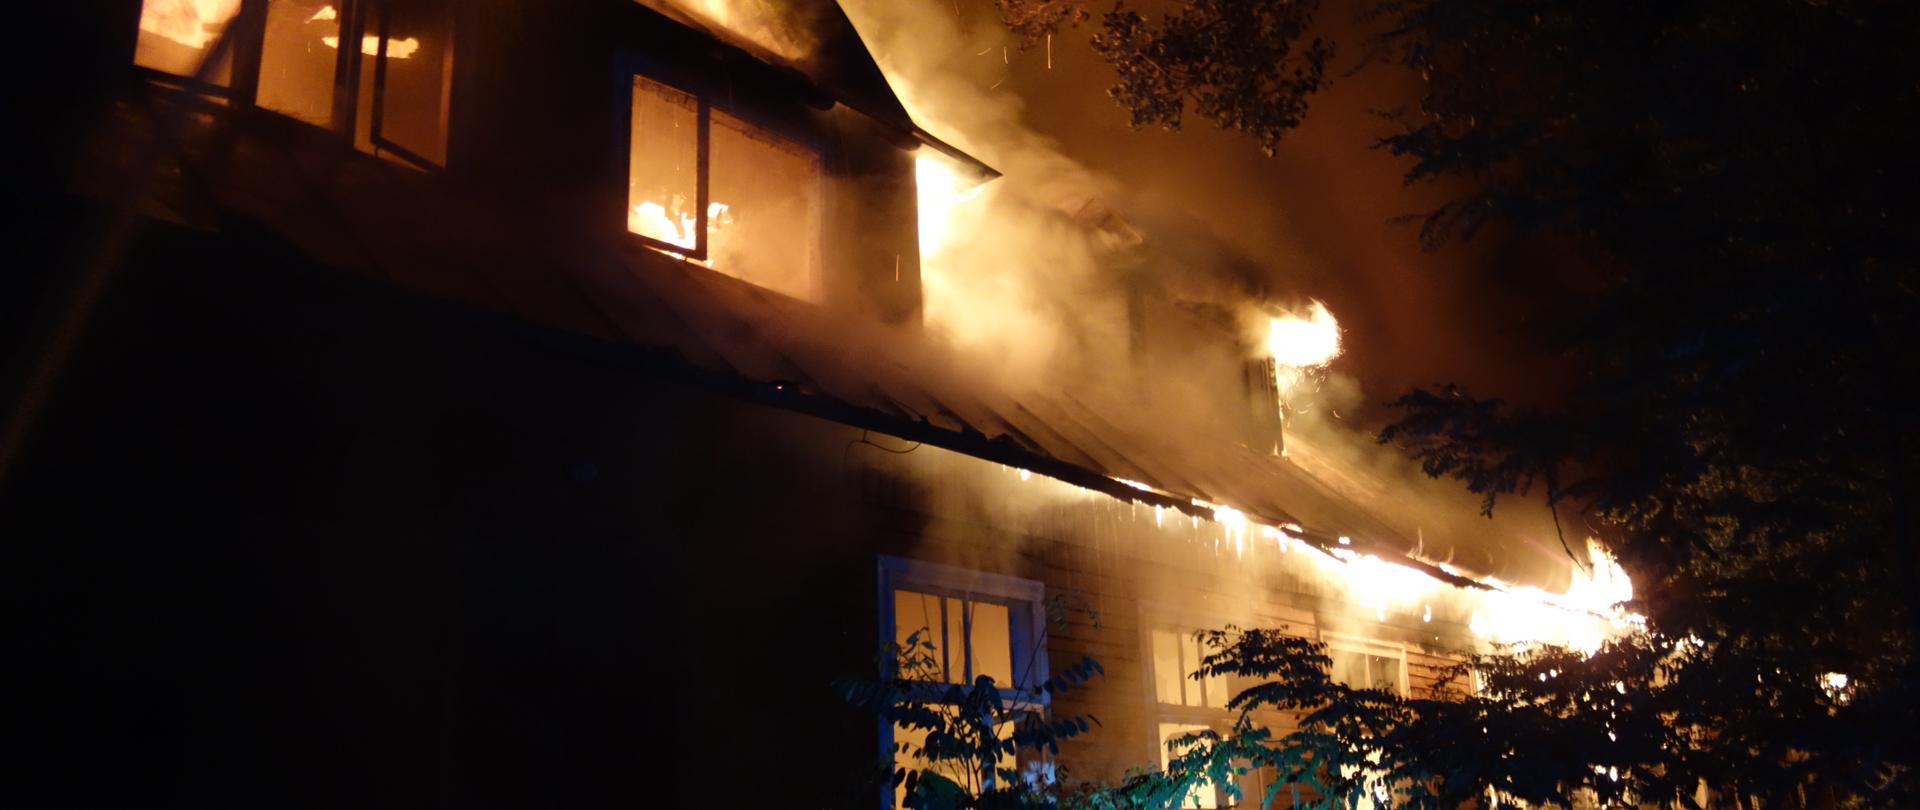 Pożar budynku po szkole podstawowej w miejscowości Wąsosz